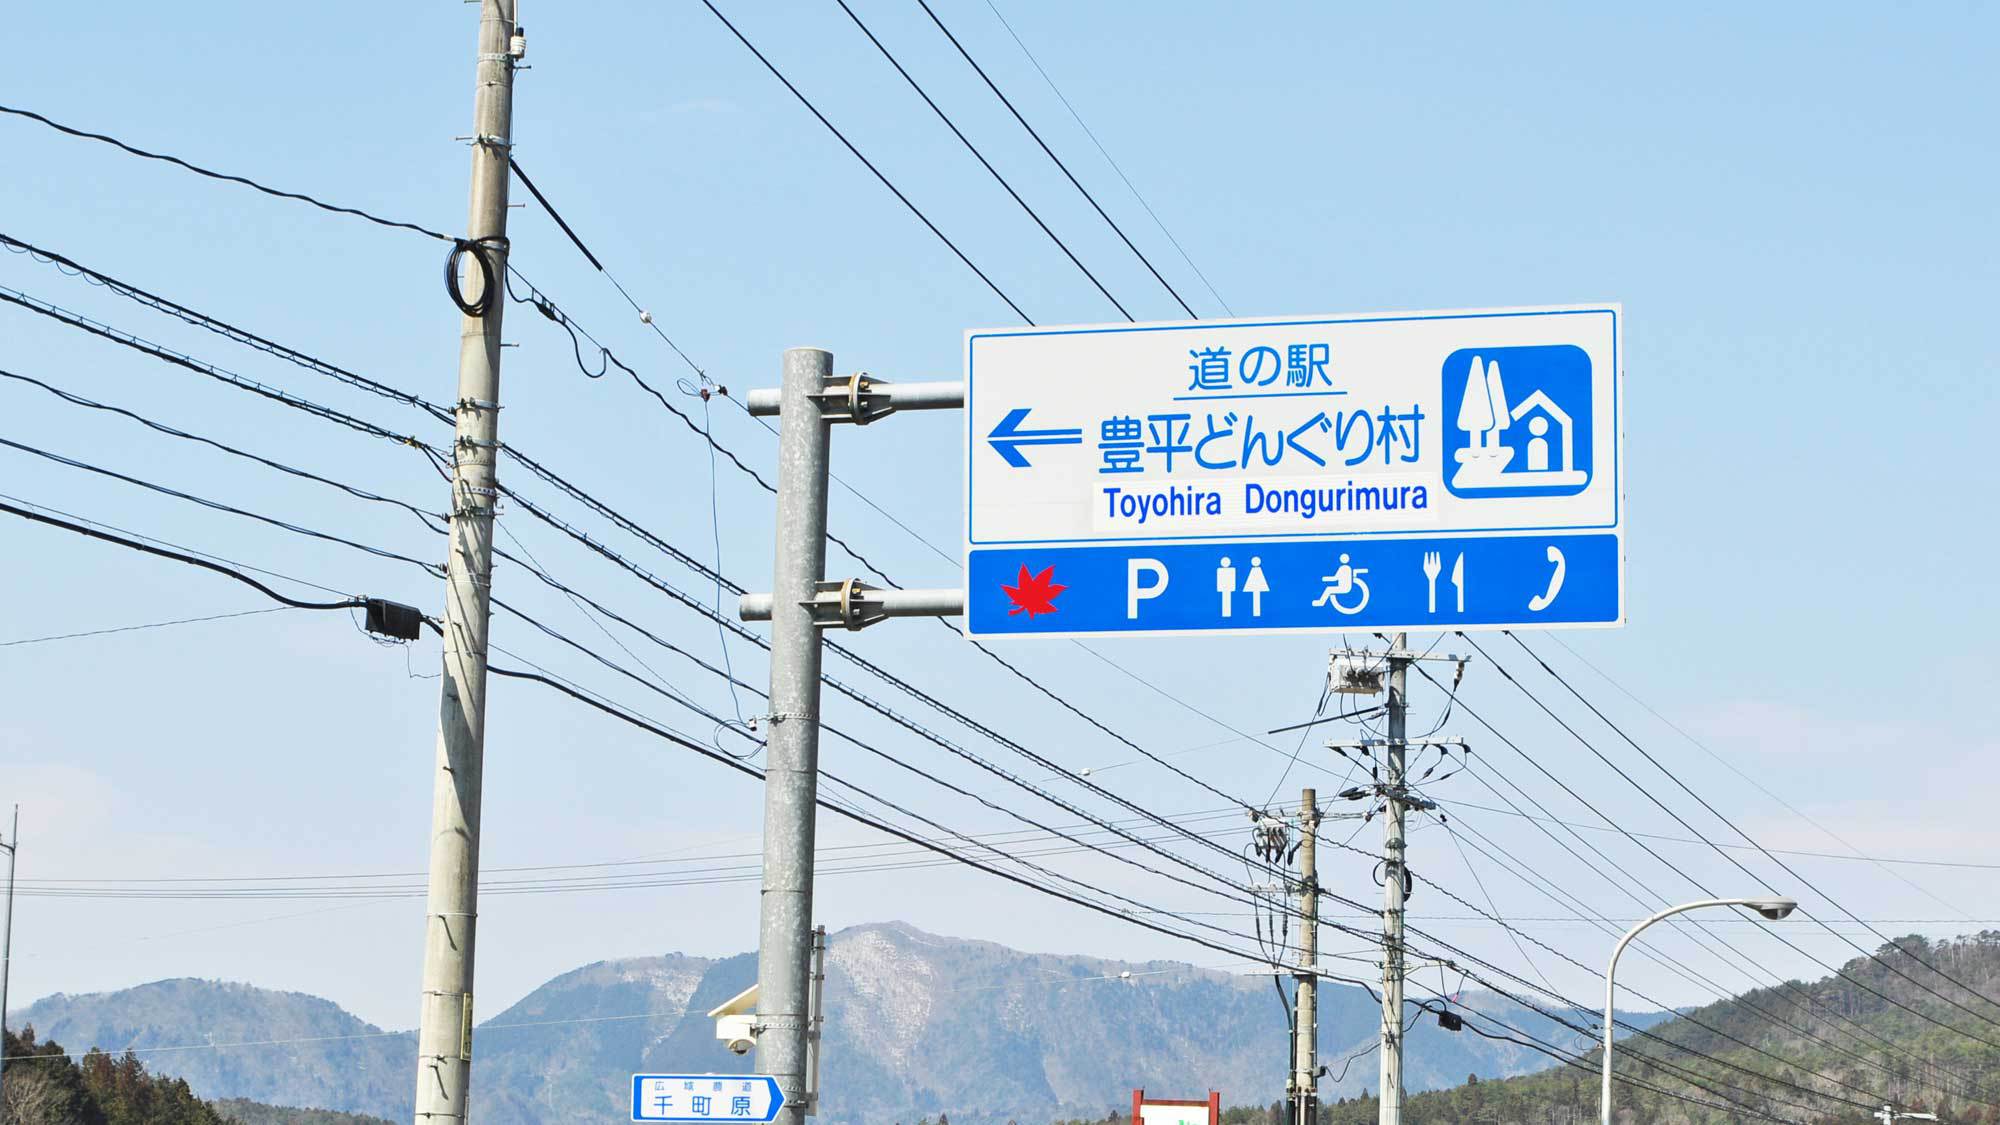 【周辺】お車で広島自動車道広島北ICから約20分、中国自動車道千代田ICから約25分です